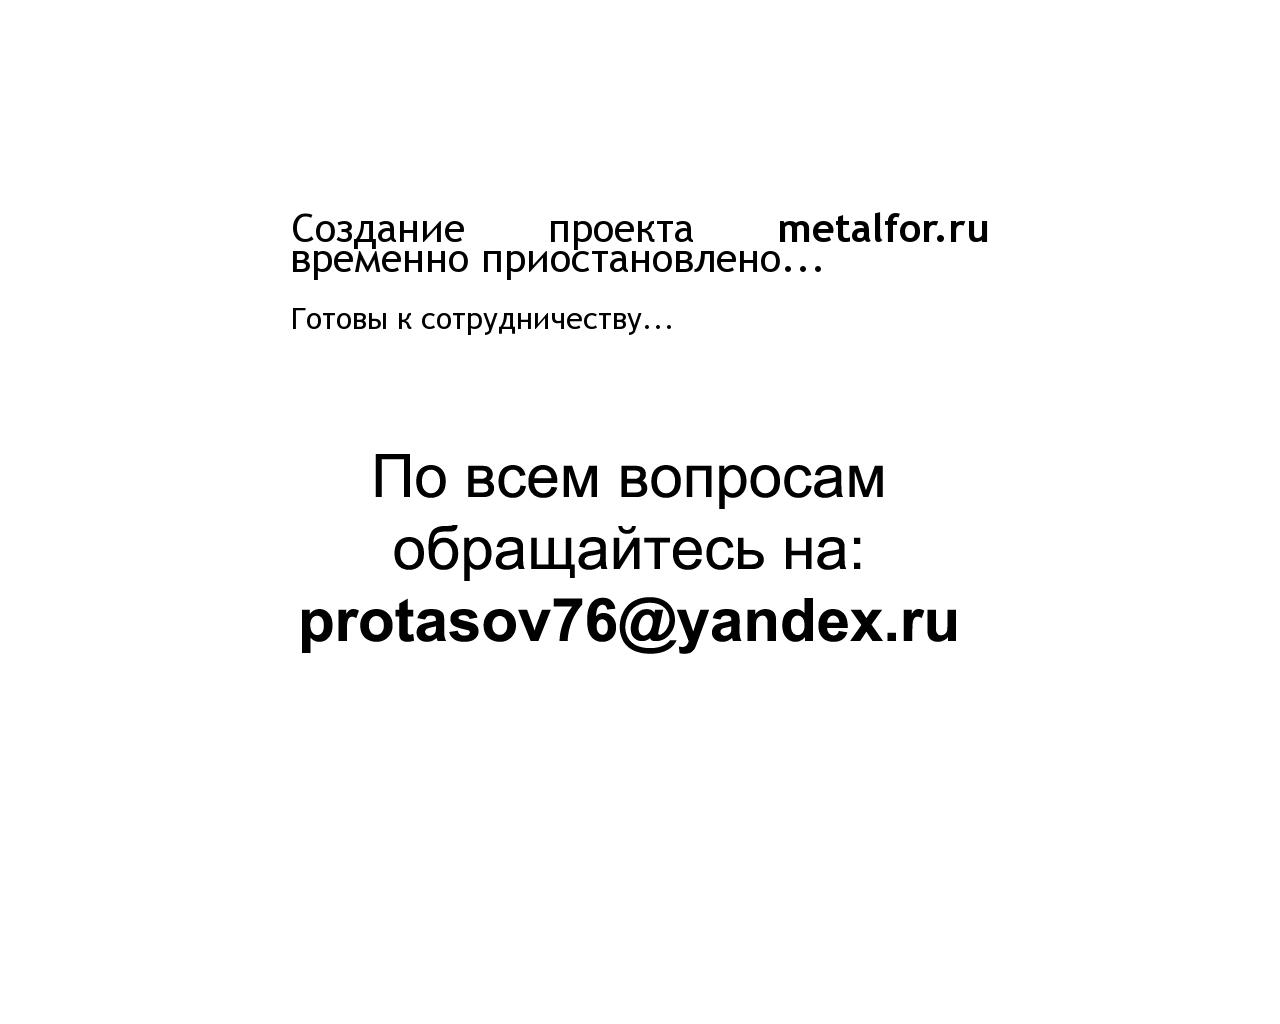 Изображение сайта metalfor.ru в разрешении 1280x1024